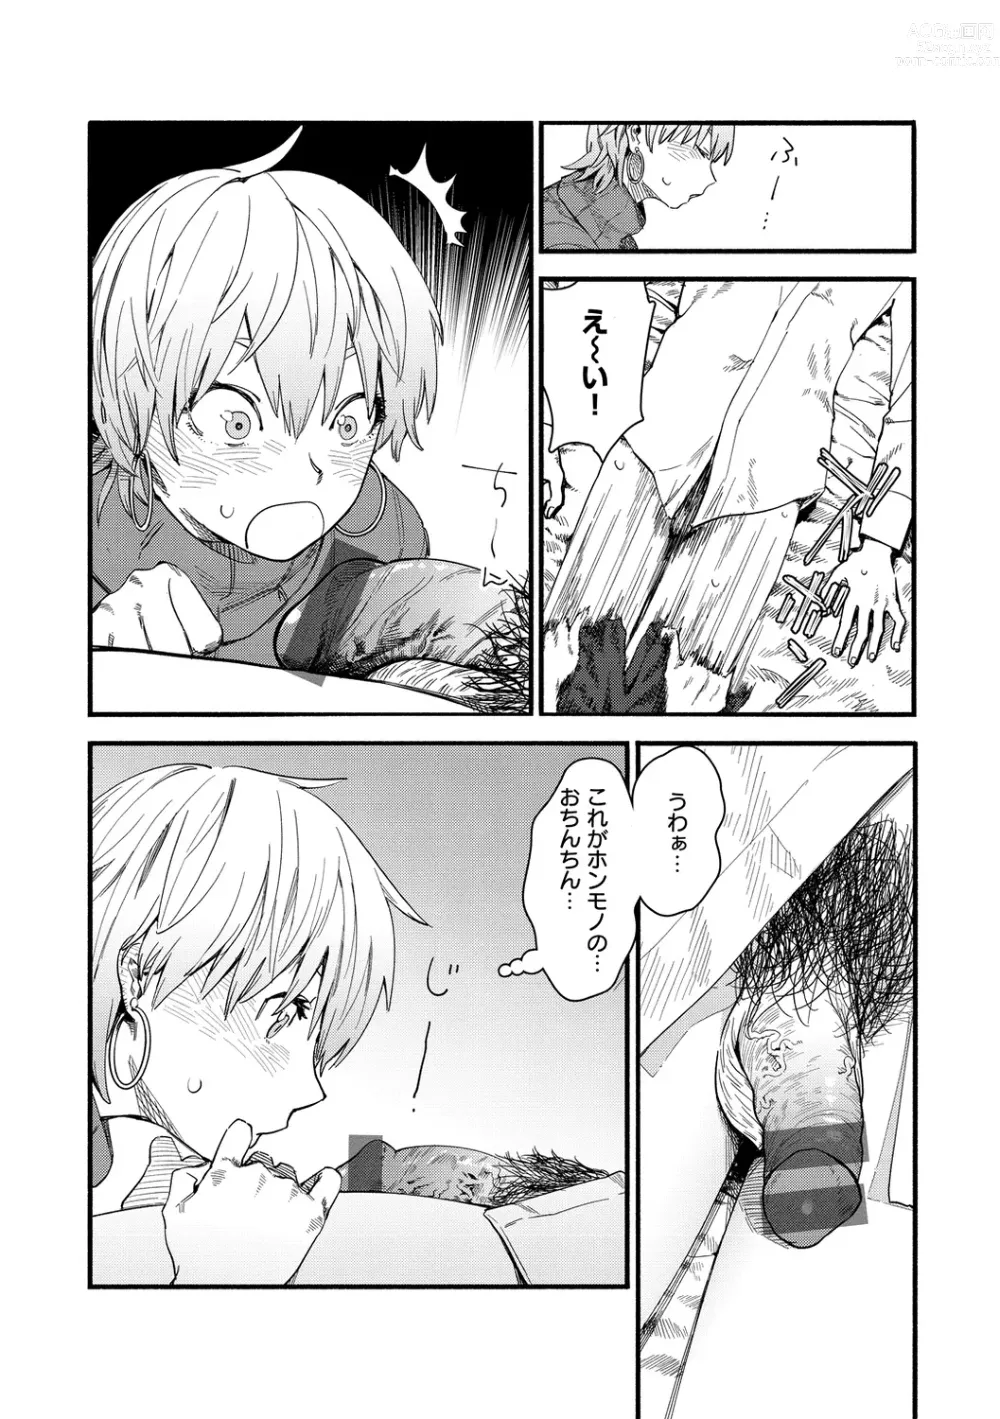 Page 26 of manga Yabai Onna